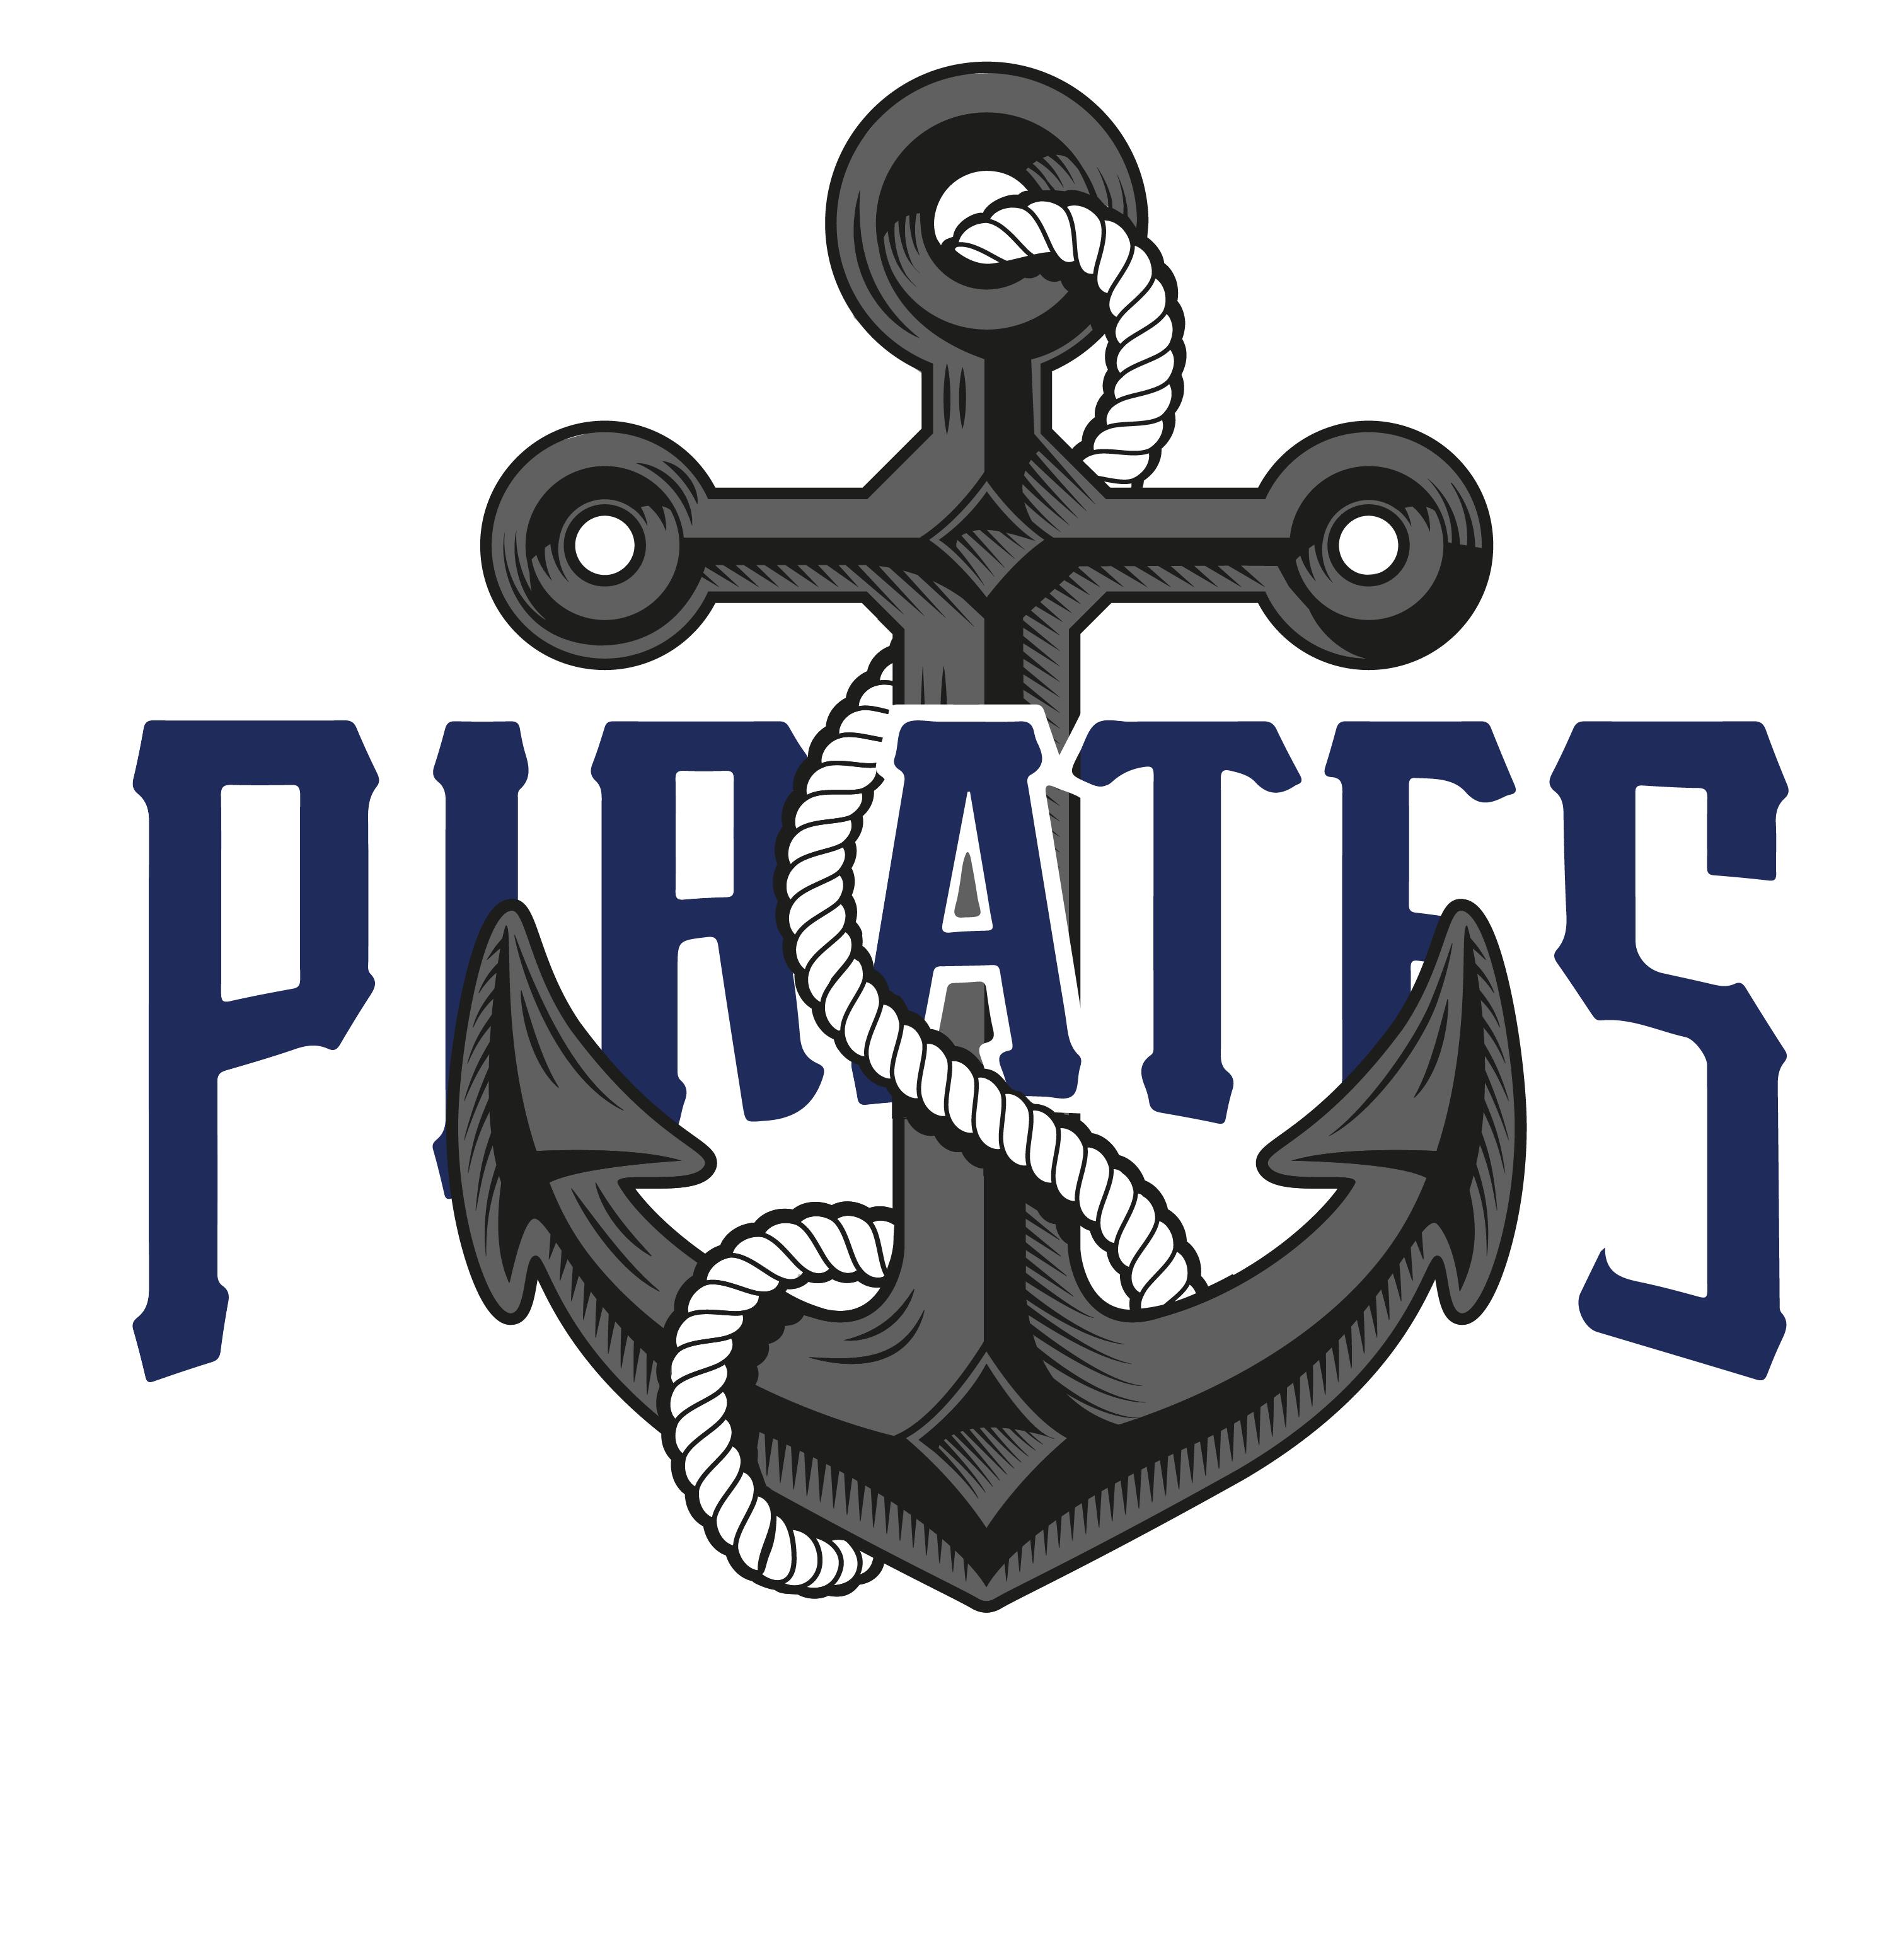 Esports logo - PIRATES text across anchor